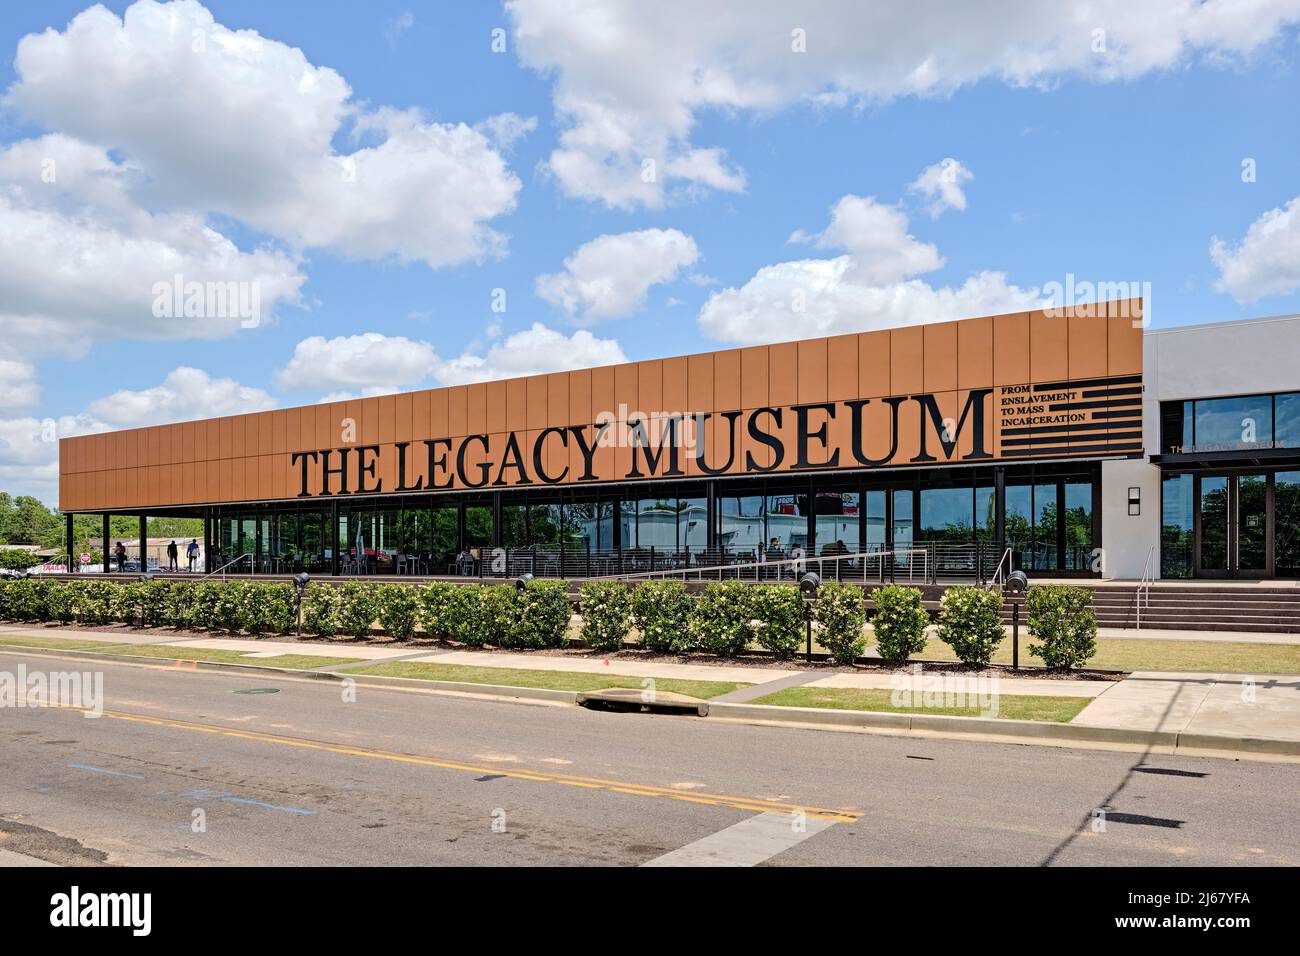 Vordere äußere des Legacy Museum, ein Civil Rights Museum, erläutert die Bürgerrechtsbewegung in den USA in Montgomery, Alabama, United States. Stockfoto